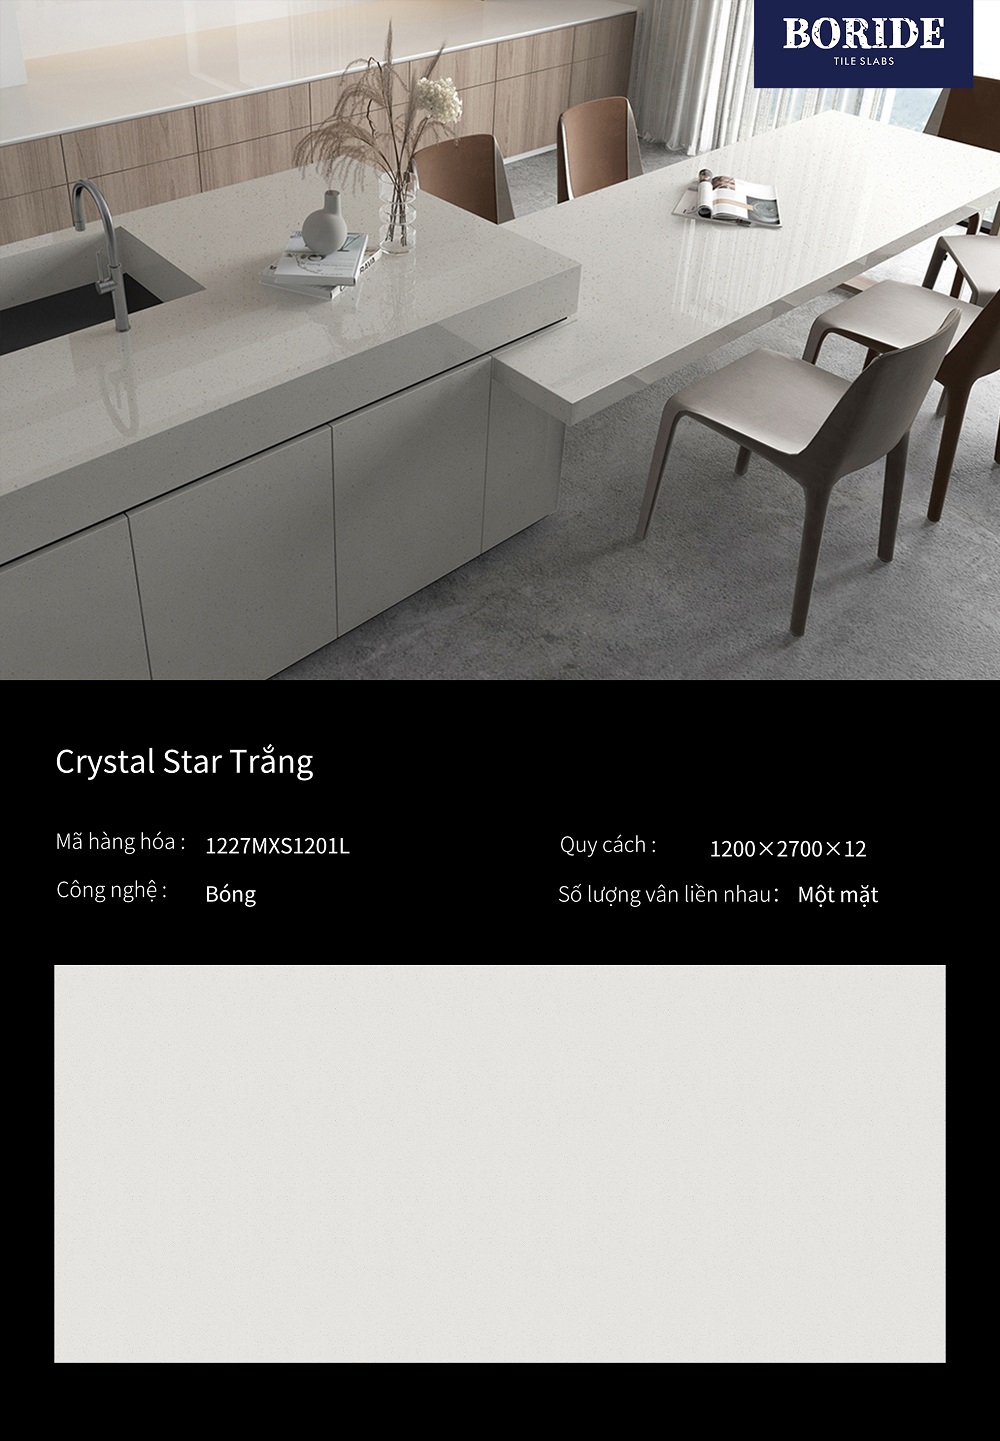 1227mxs1201l crystal star trang 03